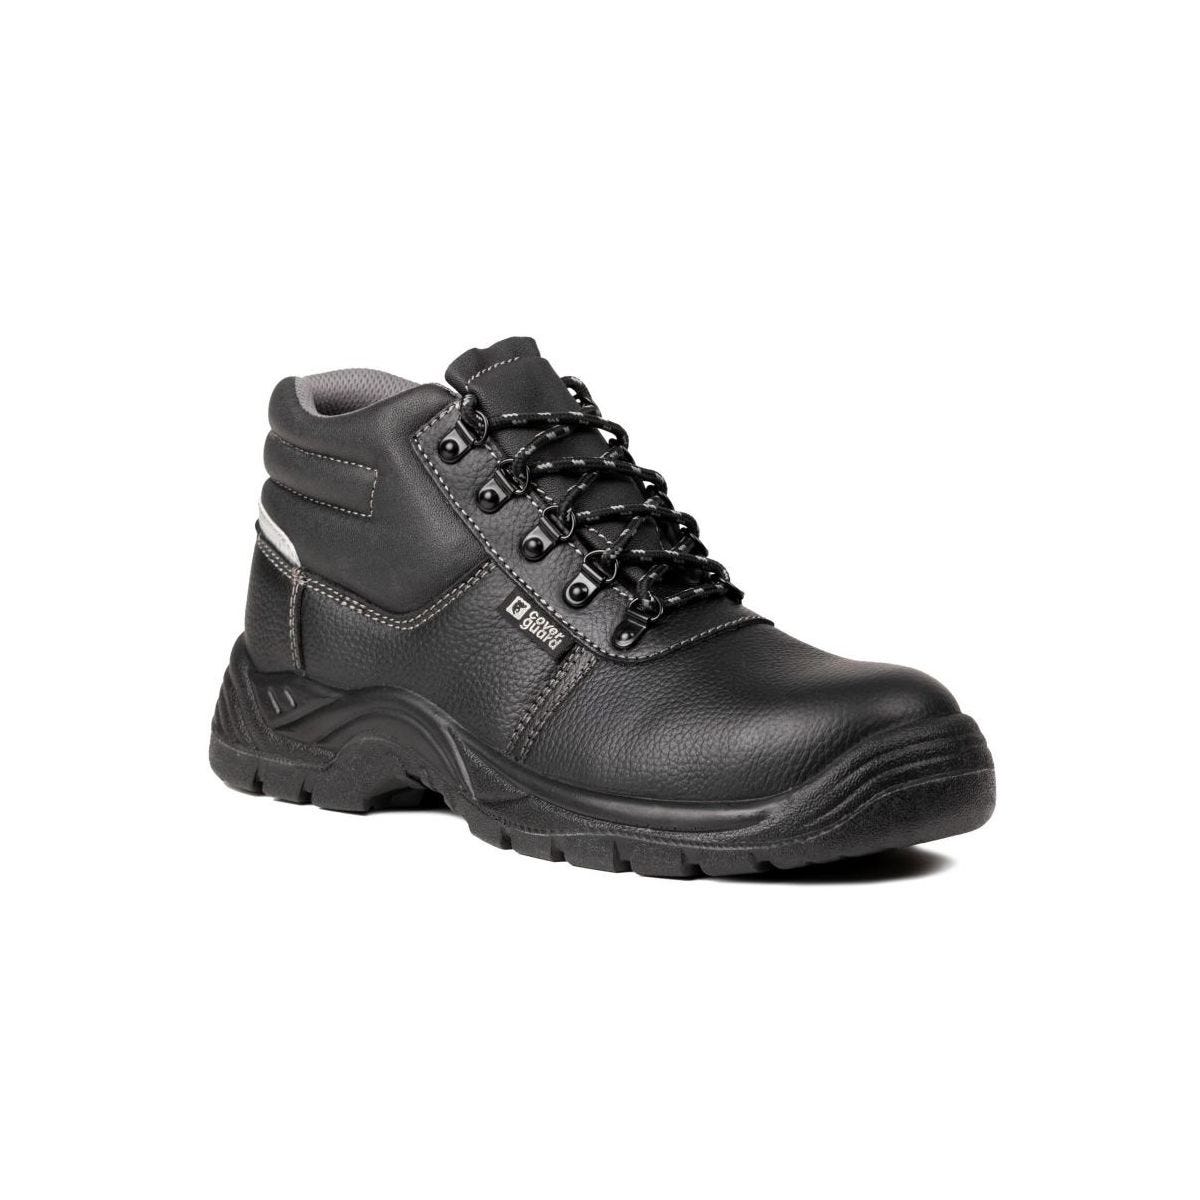 Chaussures de sécurité hautes AGATE II S3 Noir - Coverguard - Taille 41 0